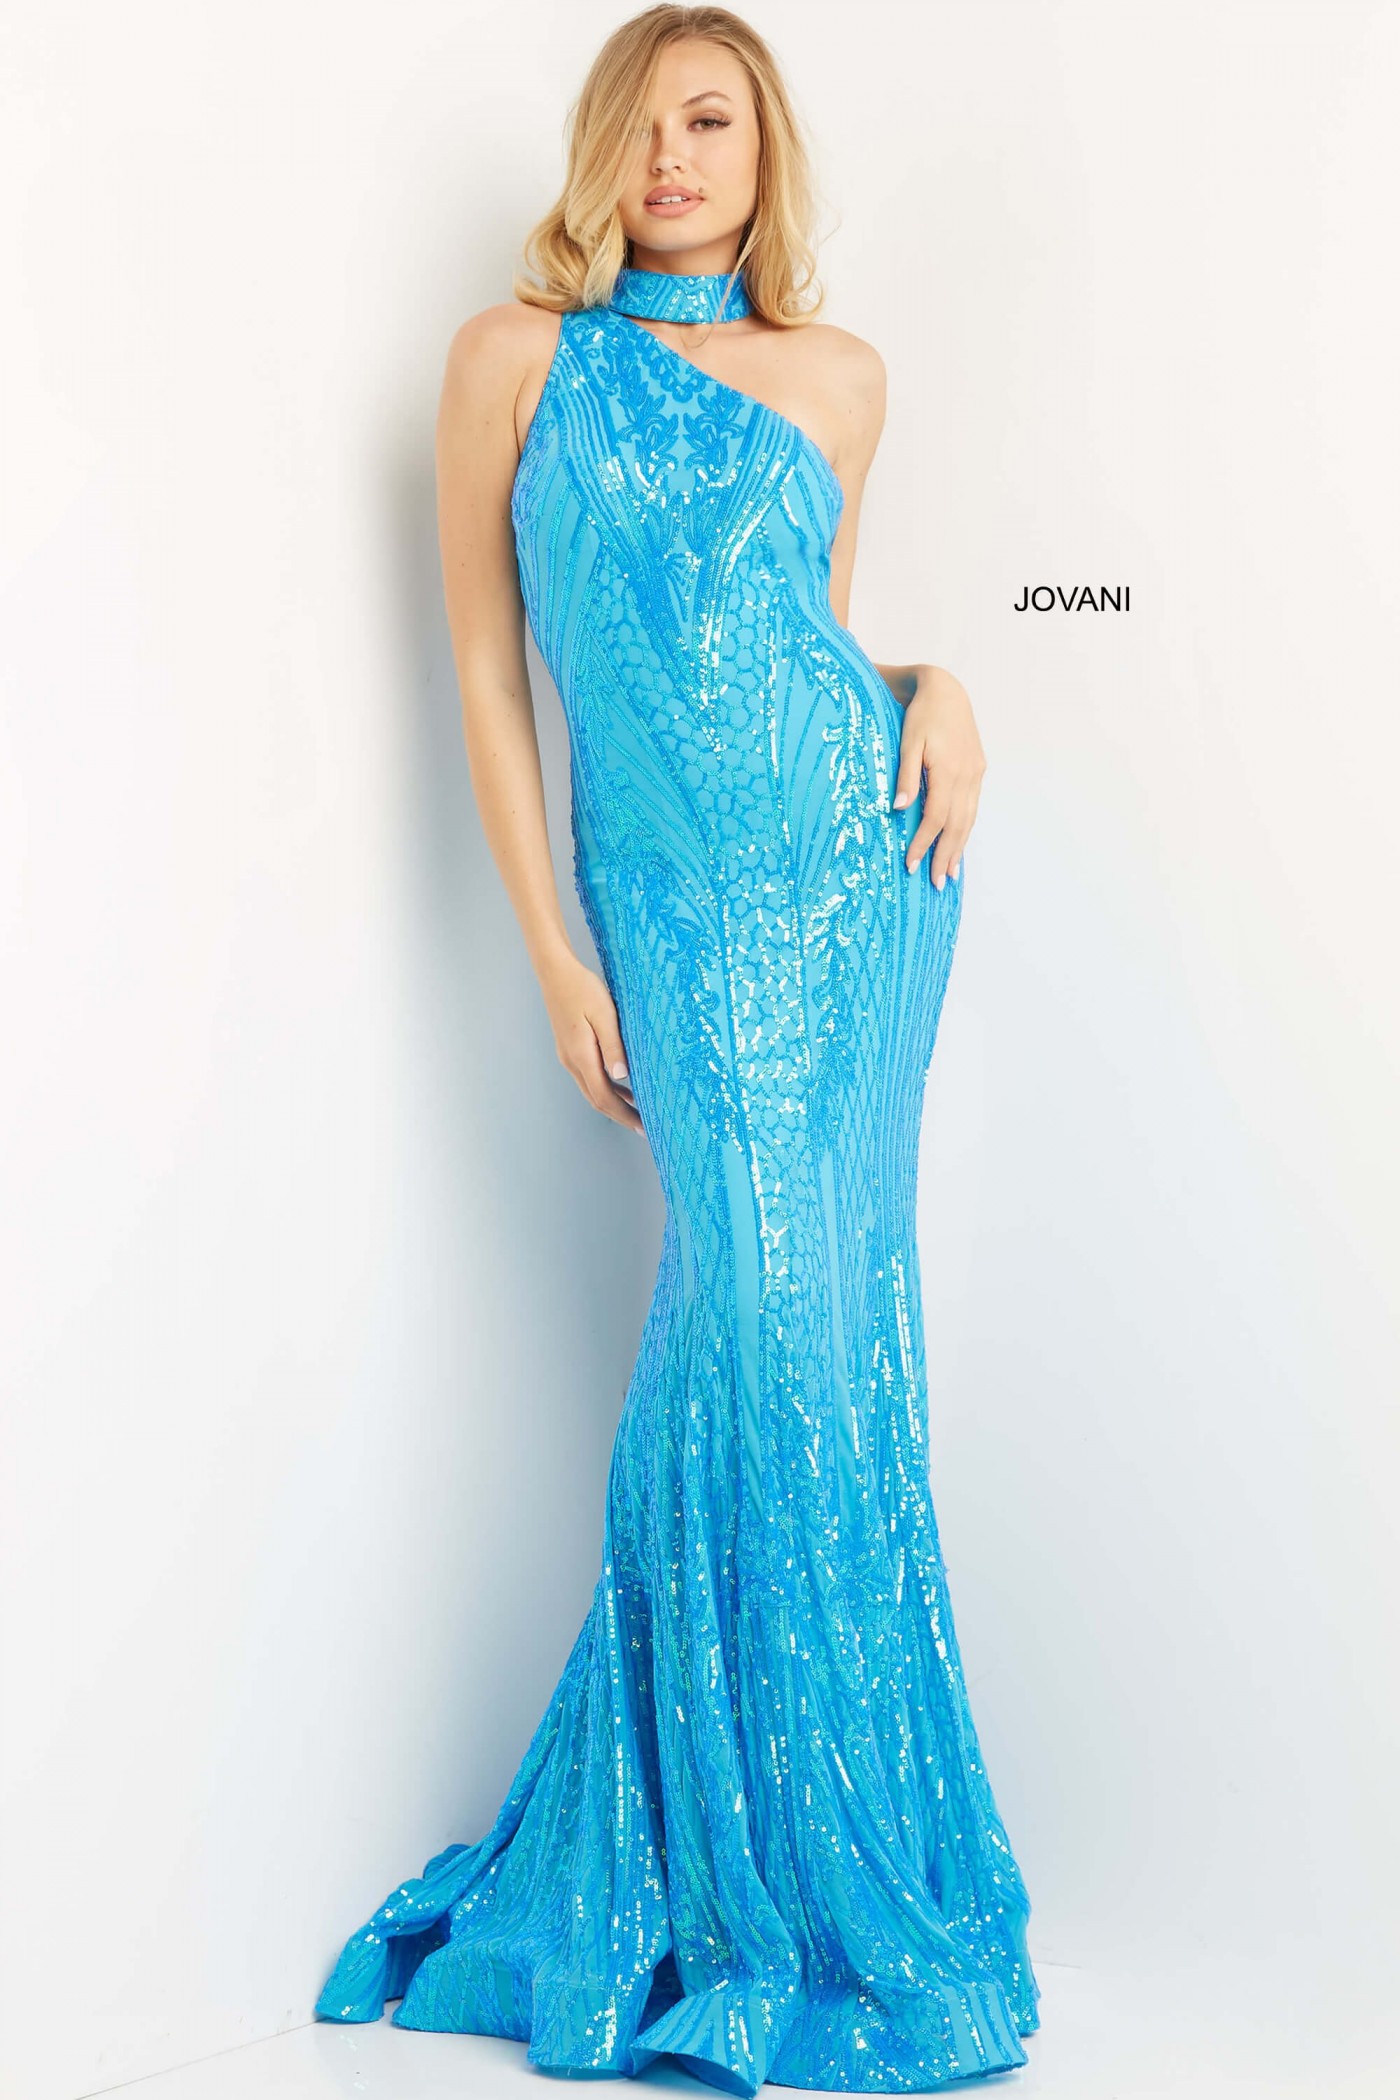 Jovani 08338 Sequin One Shoulder Prom Dress